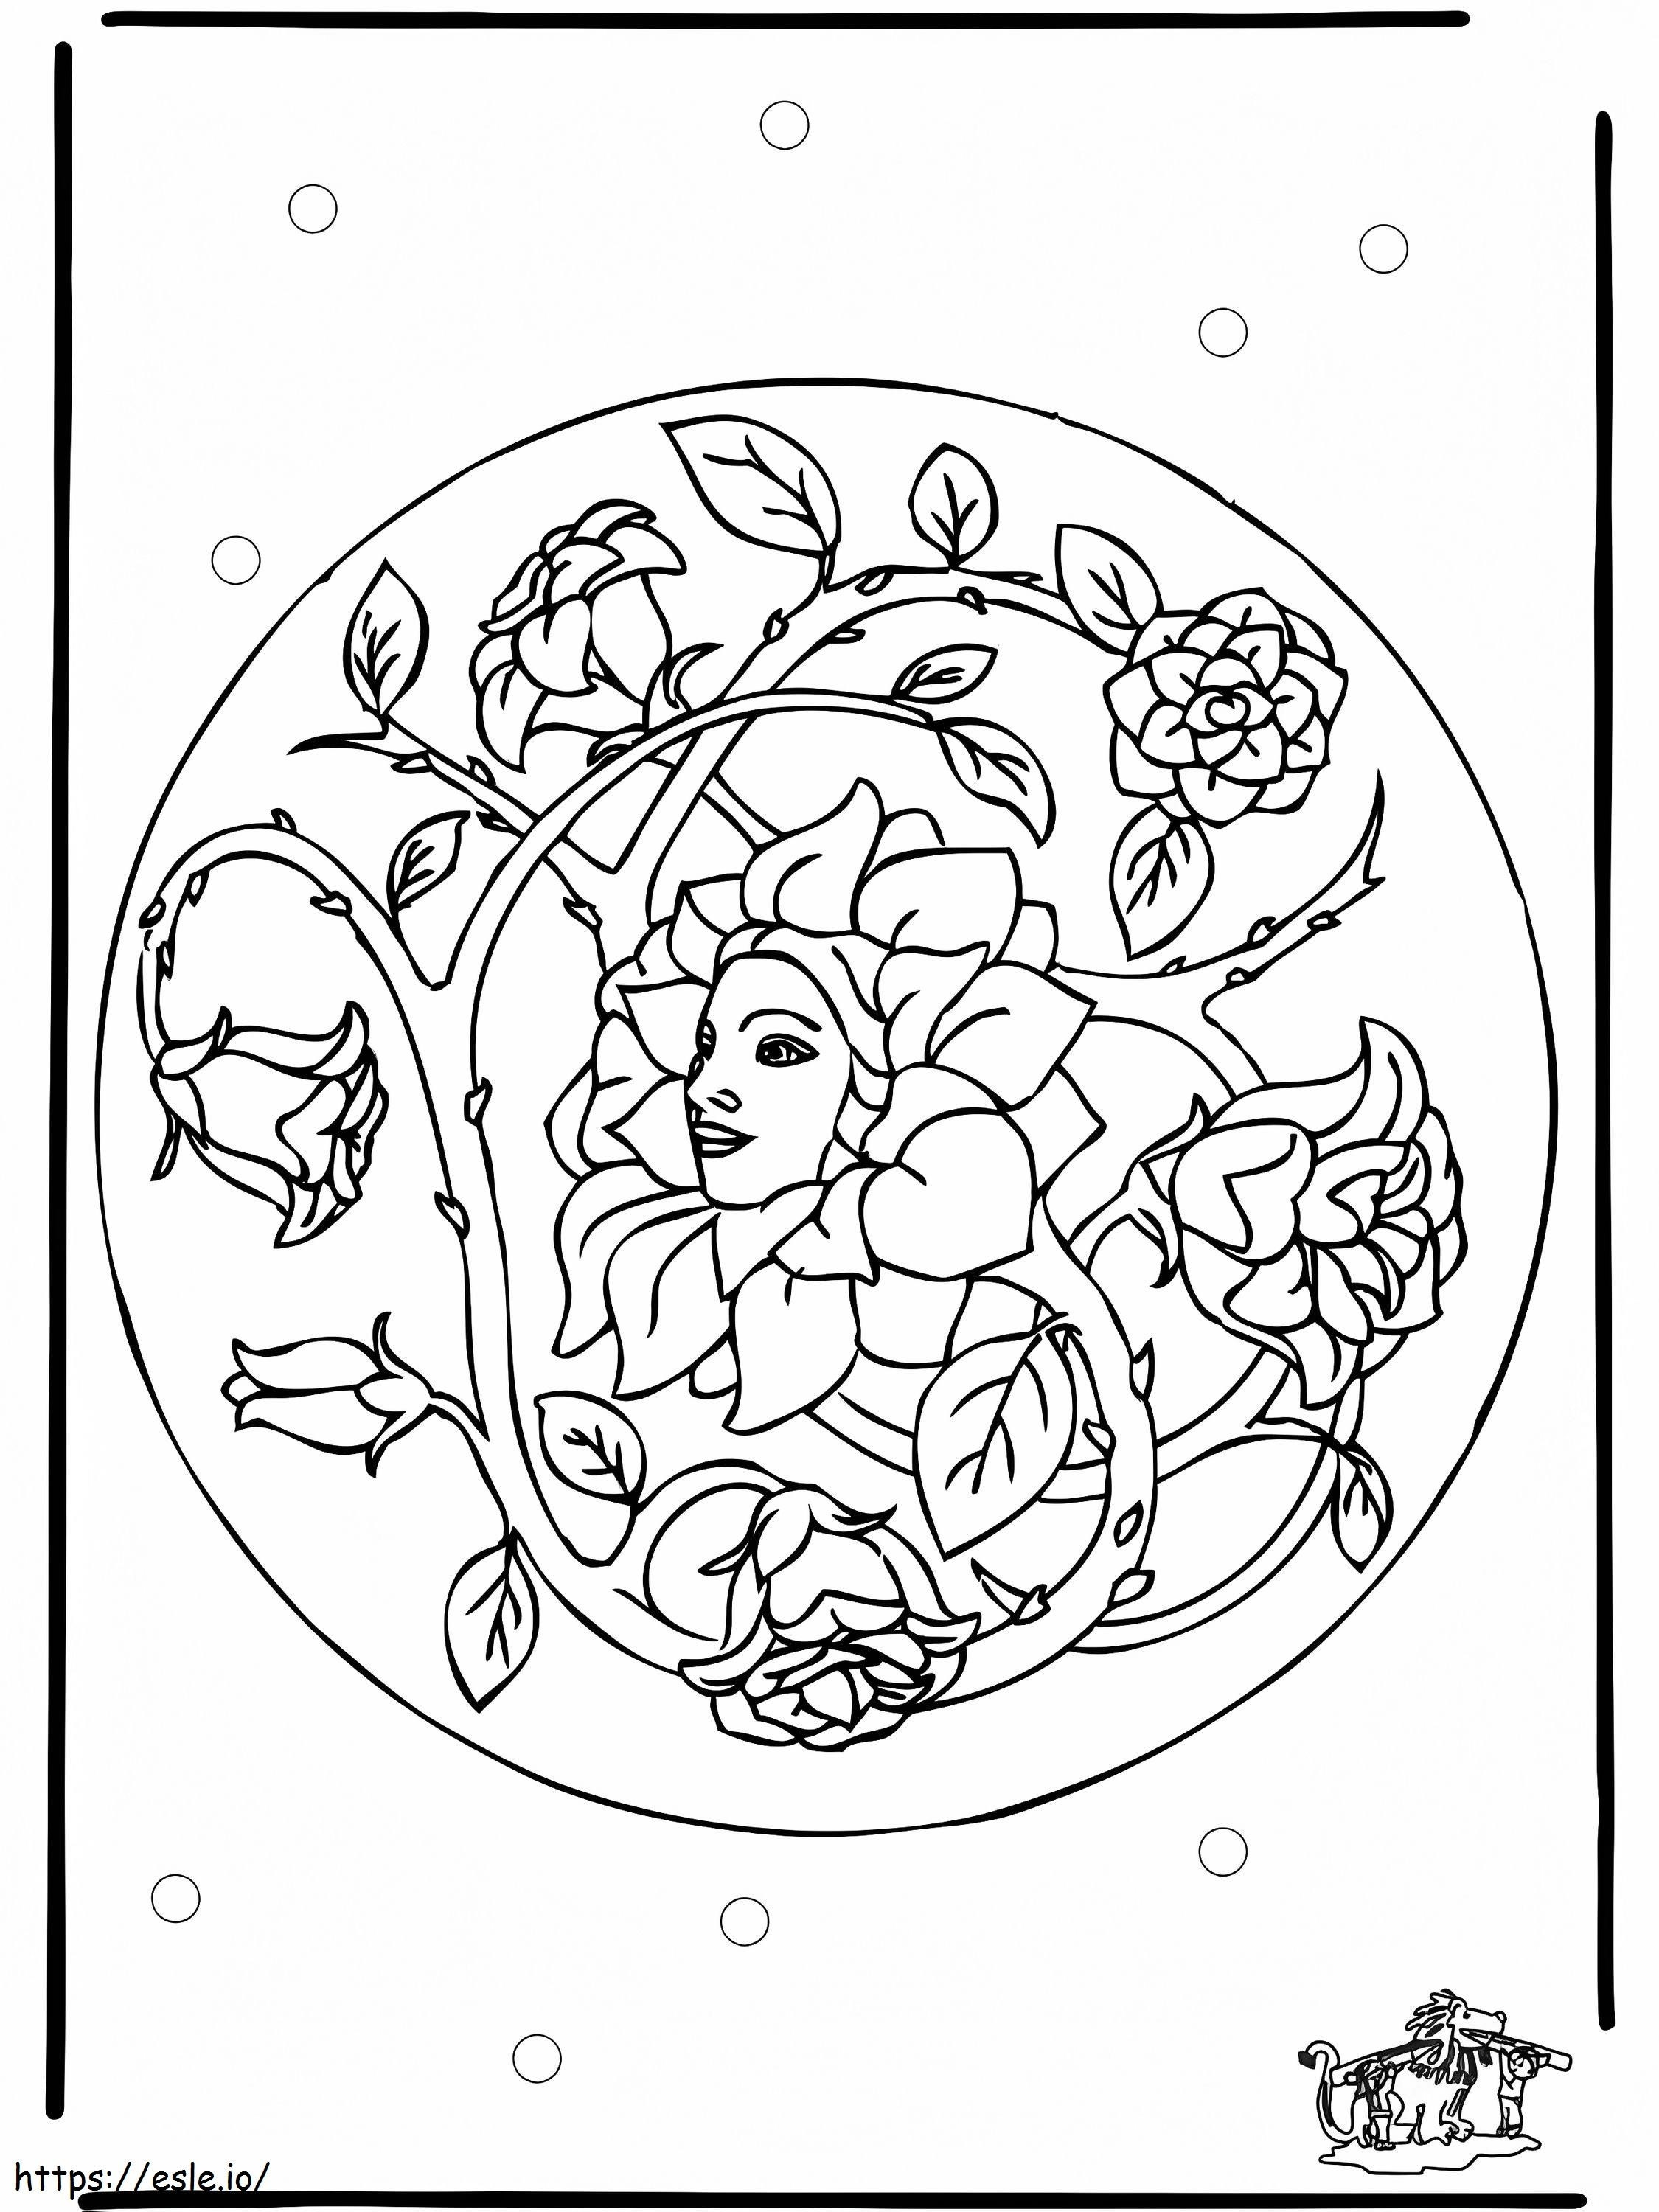 Coloriage Mandala de printemps 5 à imprimer dessin